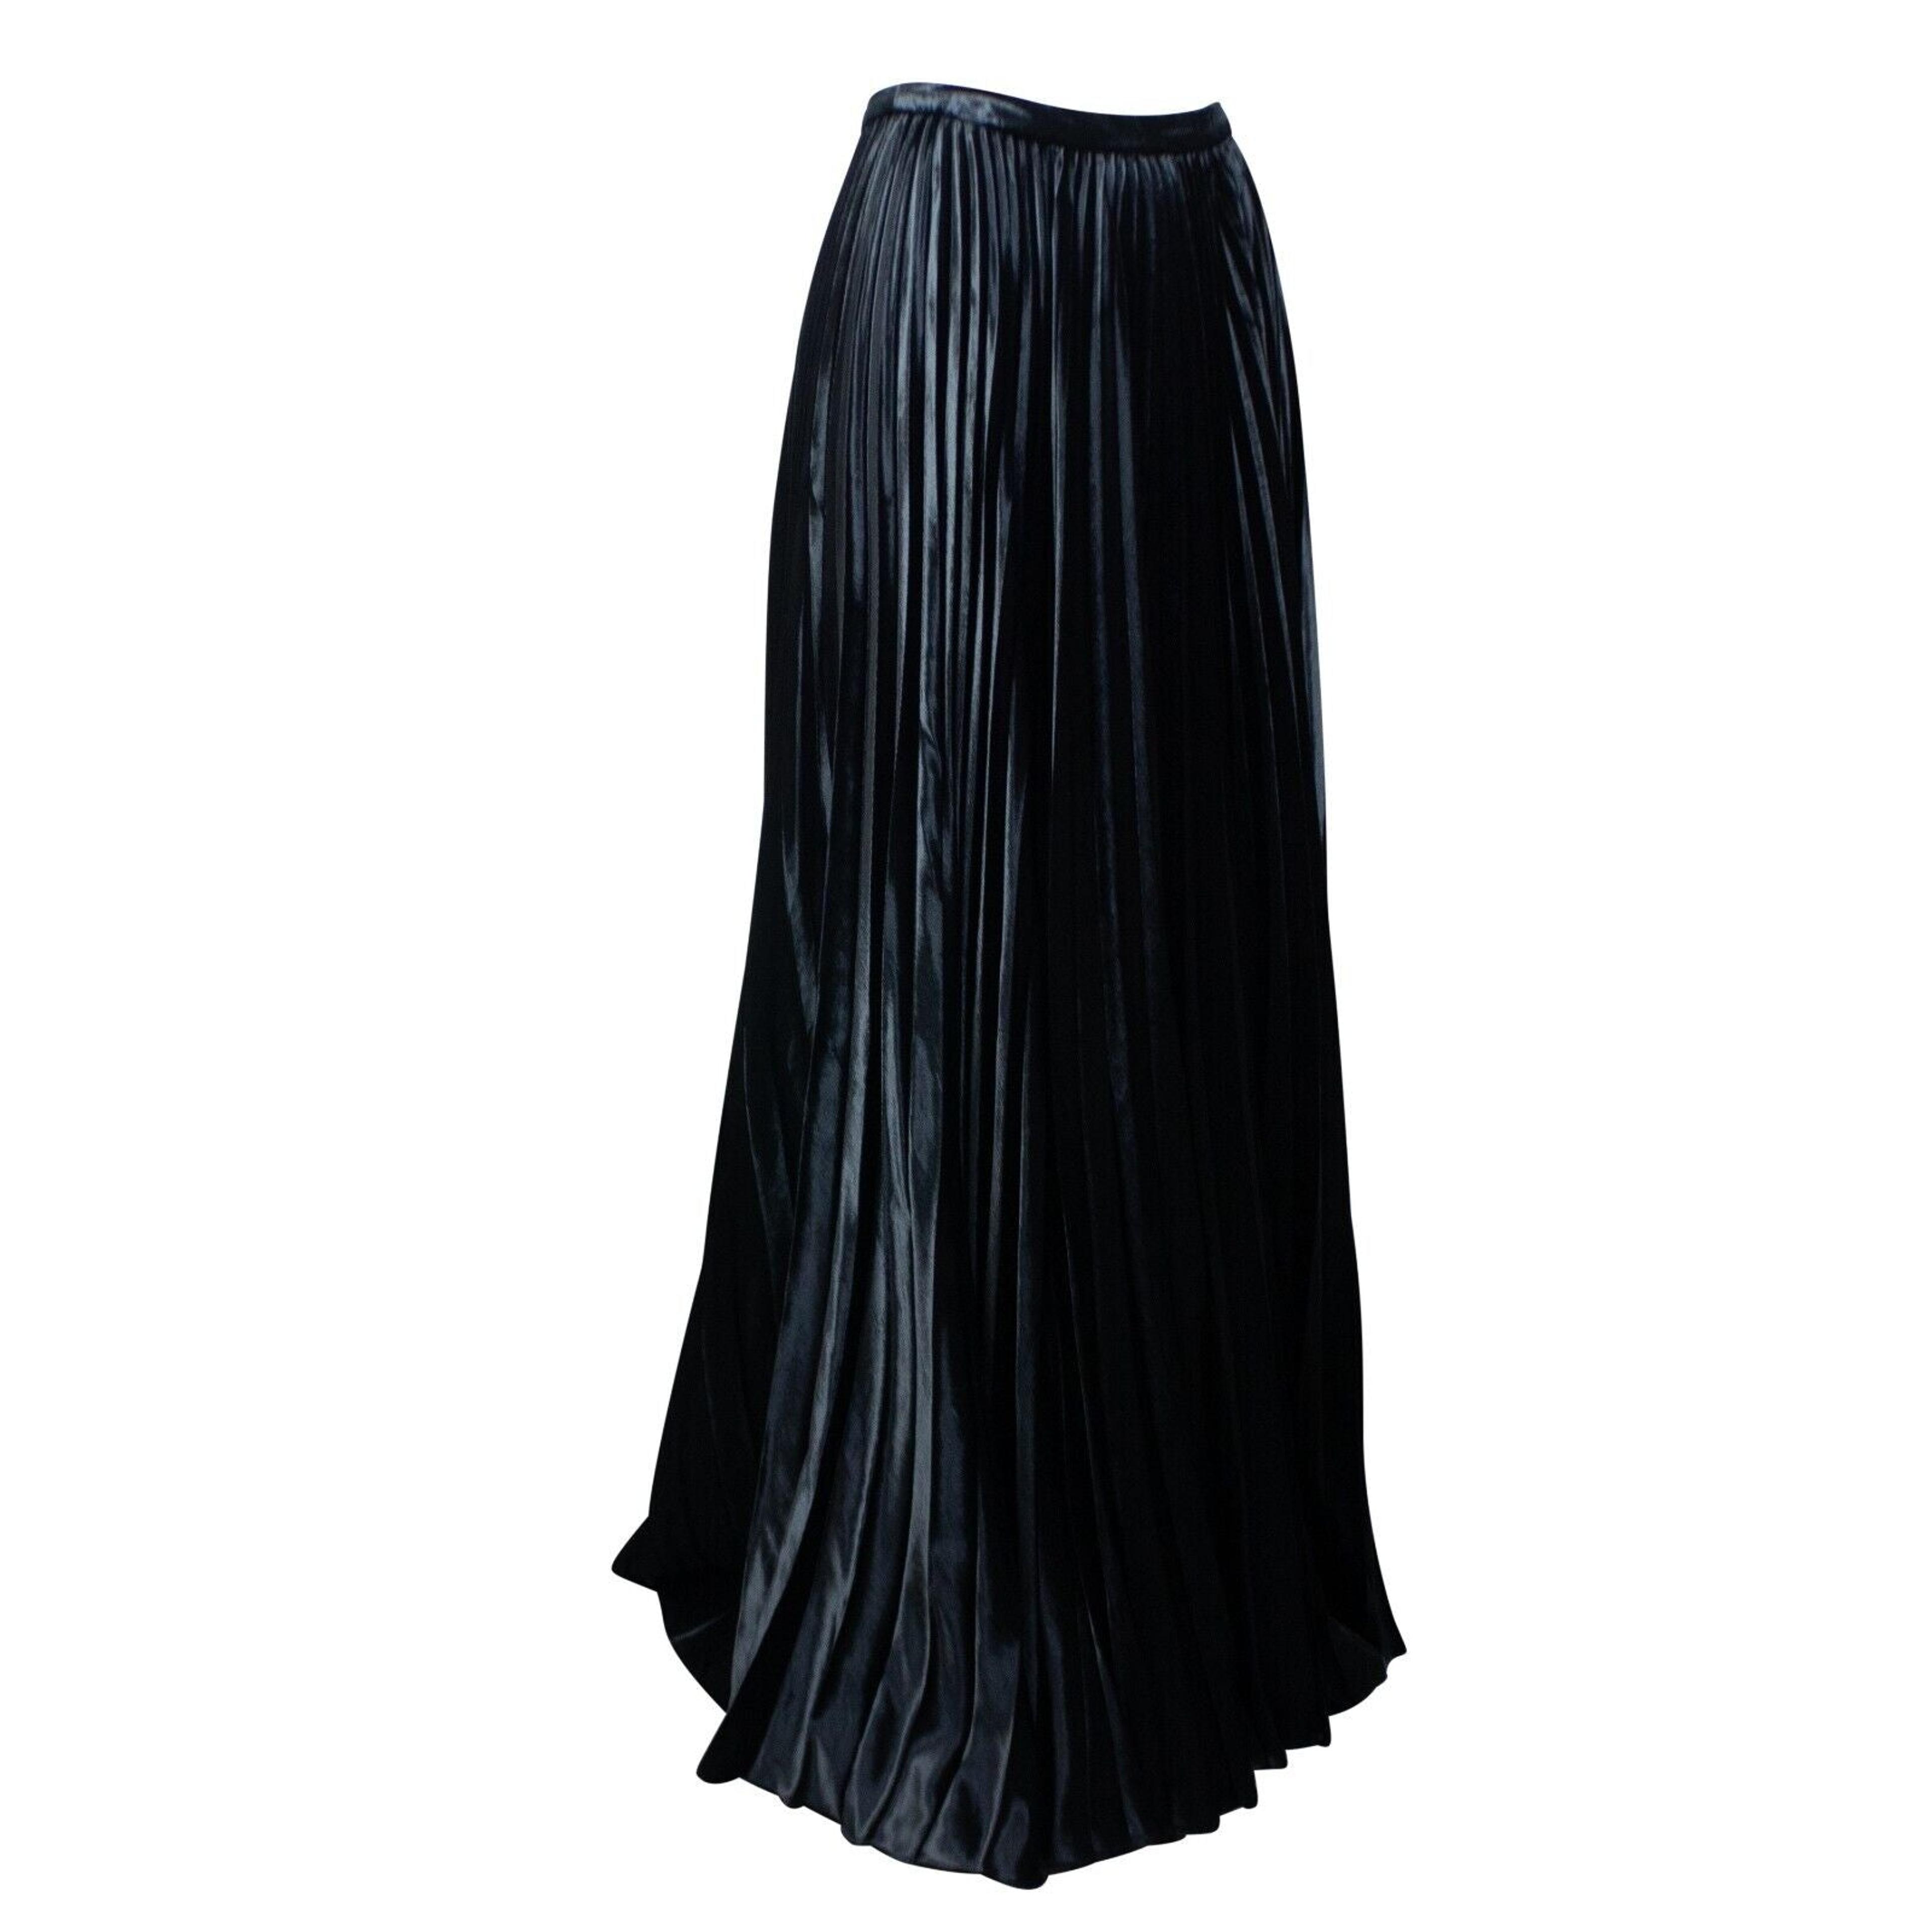 Alternate View 1 of Women's Black Plisse Velvet Maxi Skirt